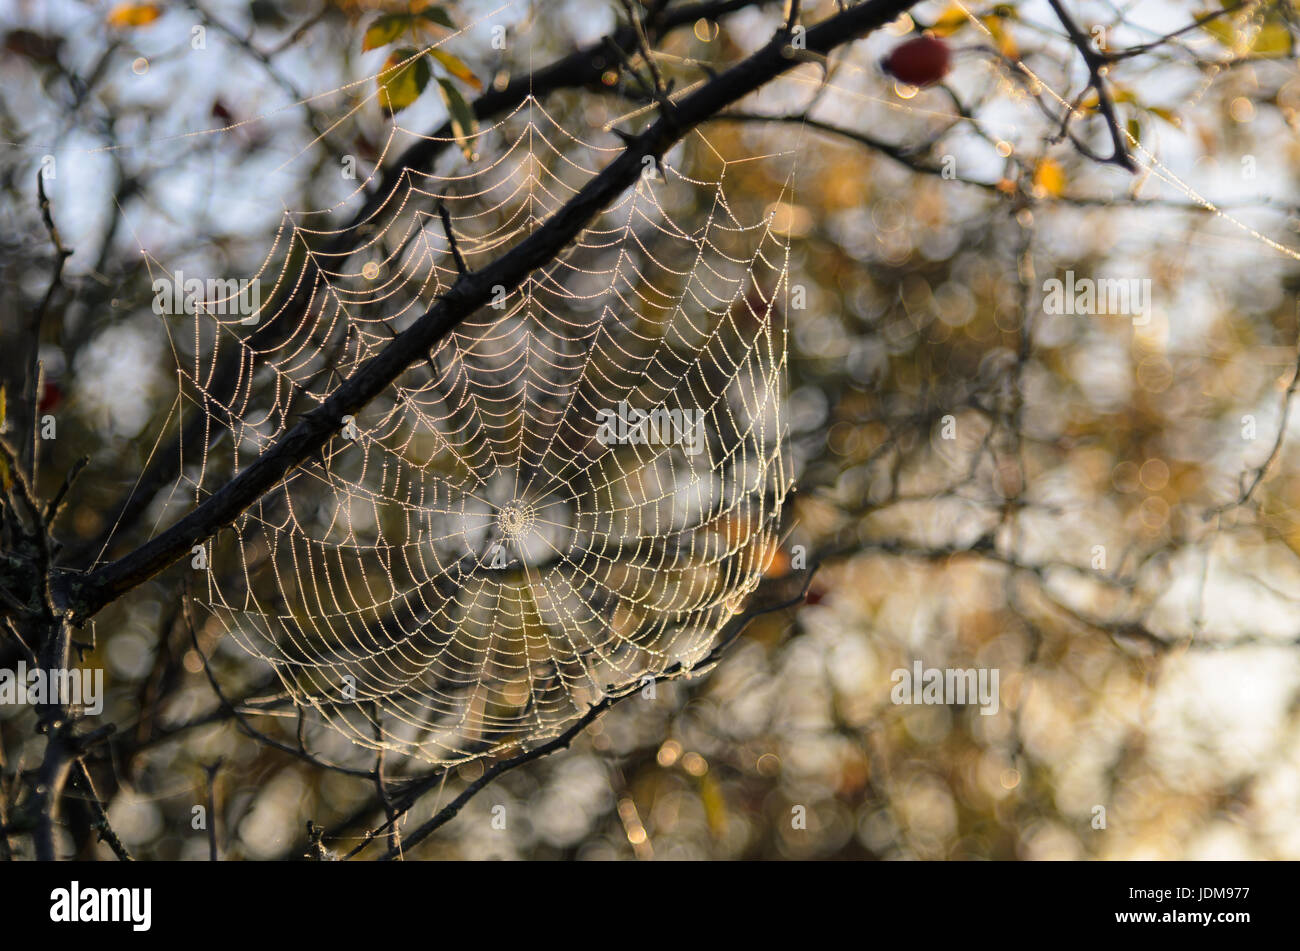 Tela de Araña cubiertos con gotas de rocío durante el verano indio en el Parque Nacional Hortobagy, Hungría Foto de stock